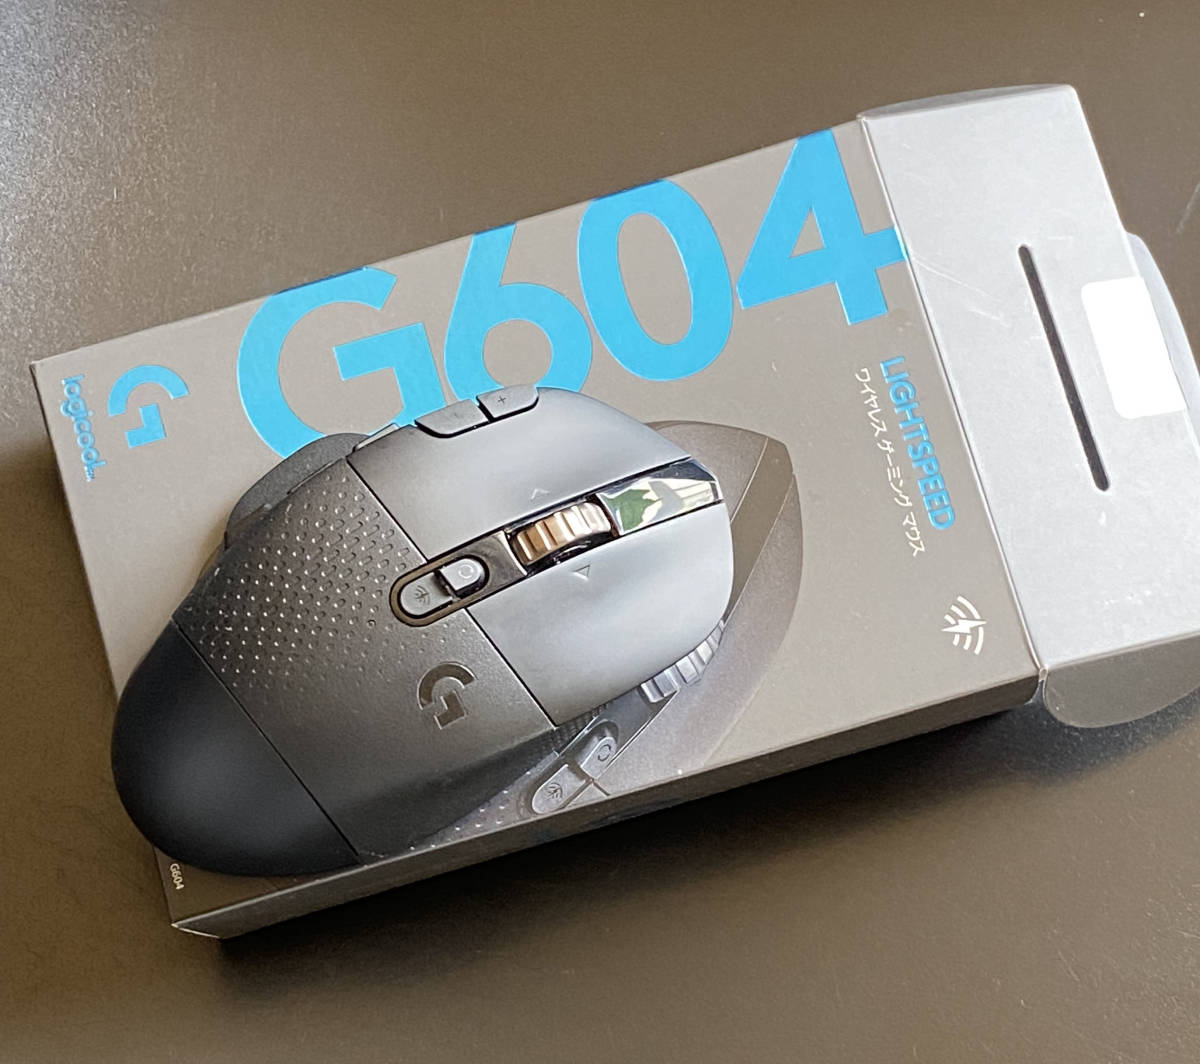 ロジクール G604 LIGHTSPEED Gaming Mouse オークション比較 - 価格.com